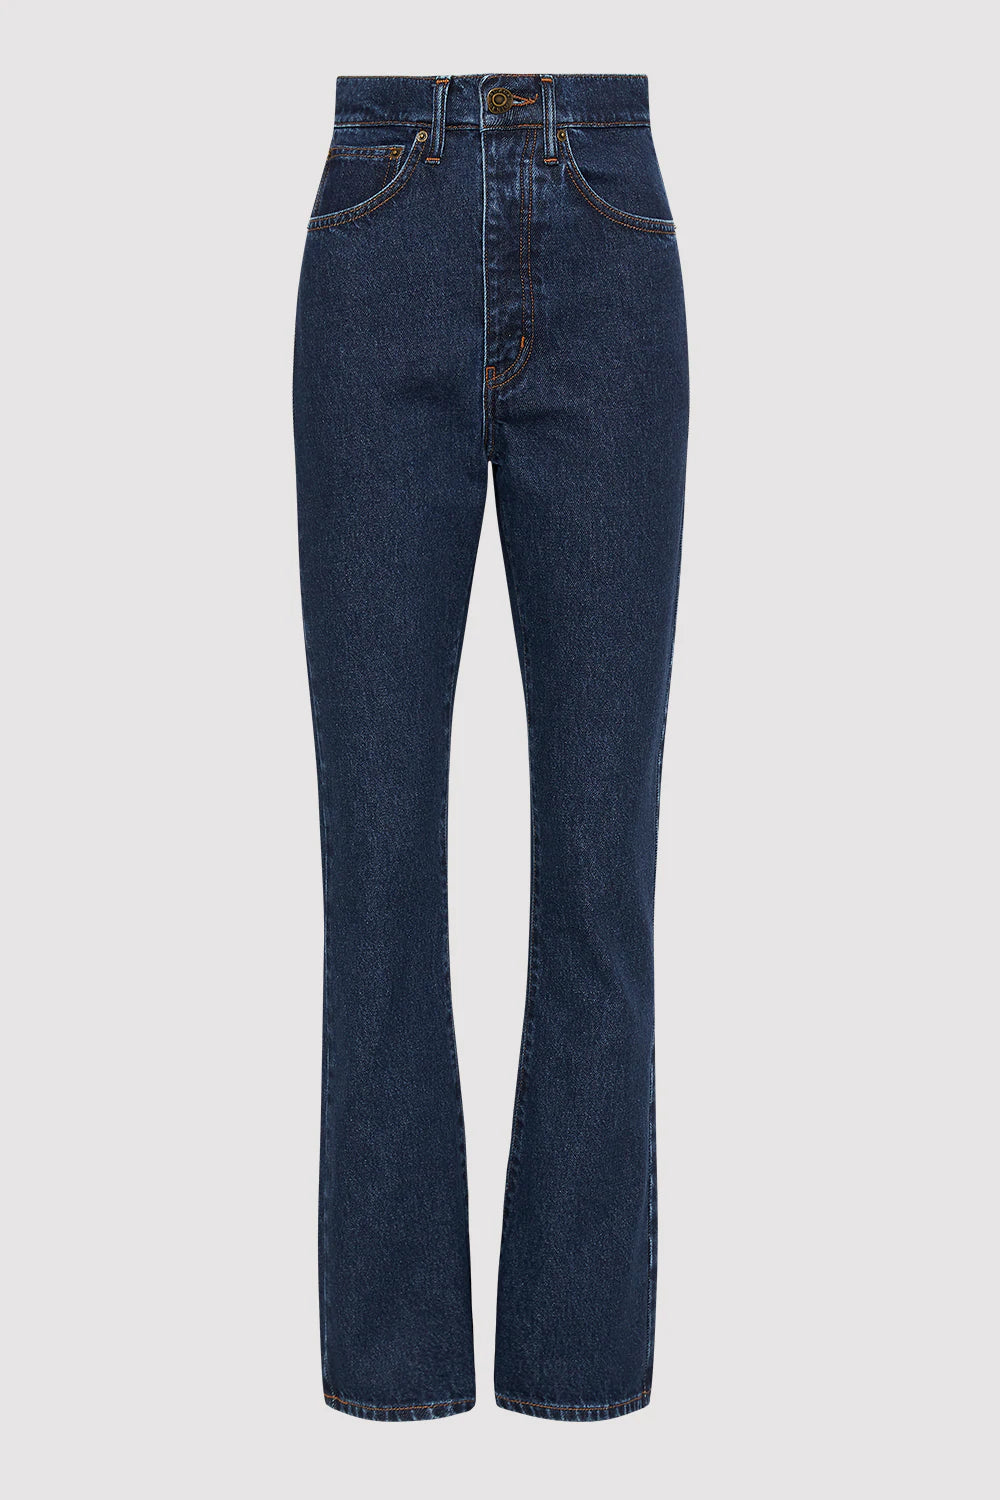 High Waist Crop Flare Jeans- Indigo